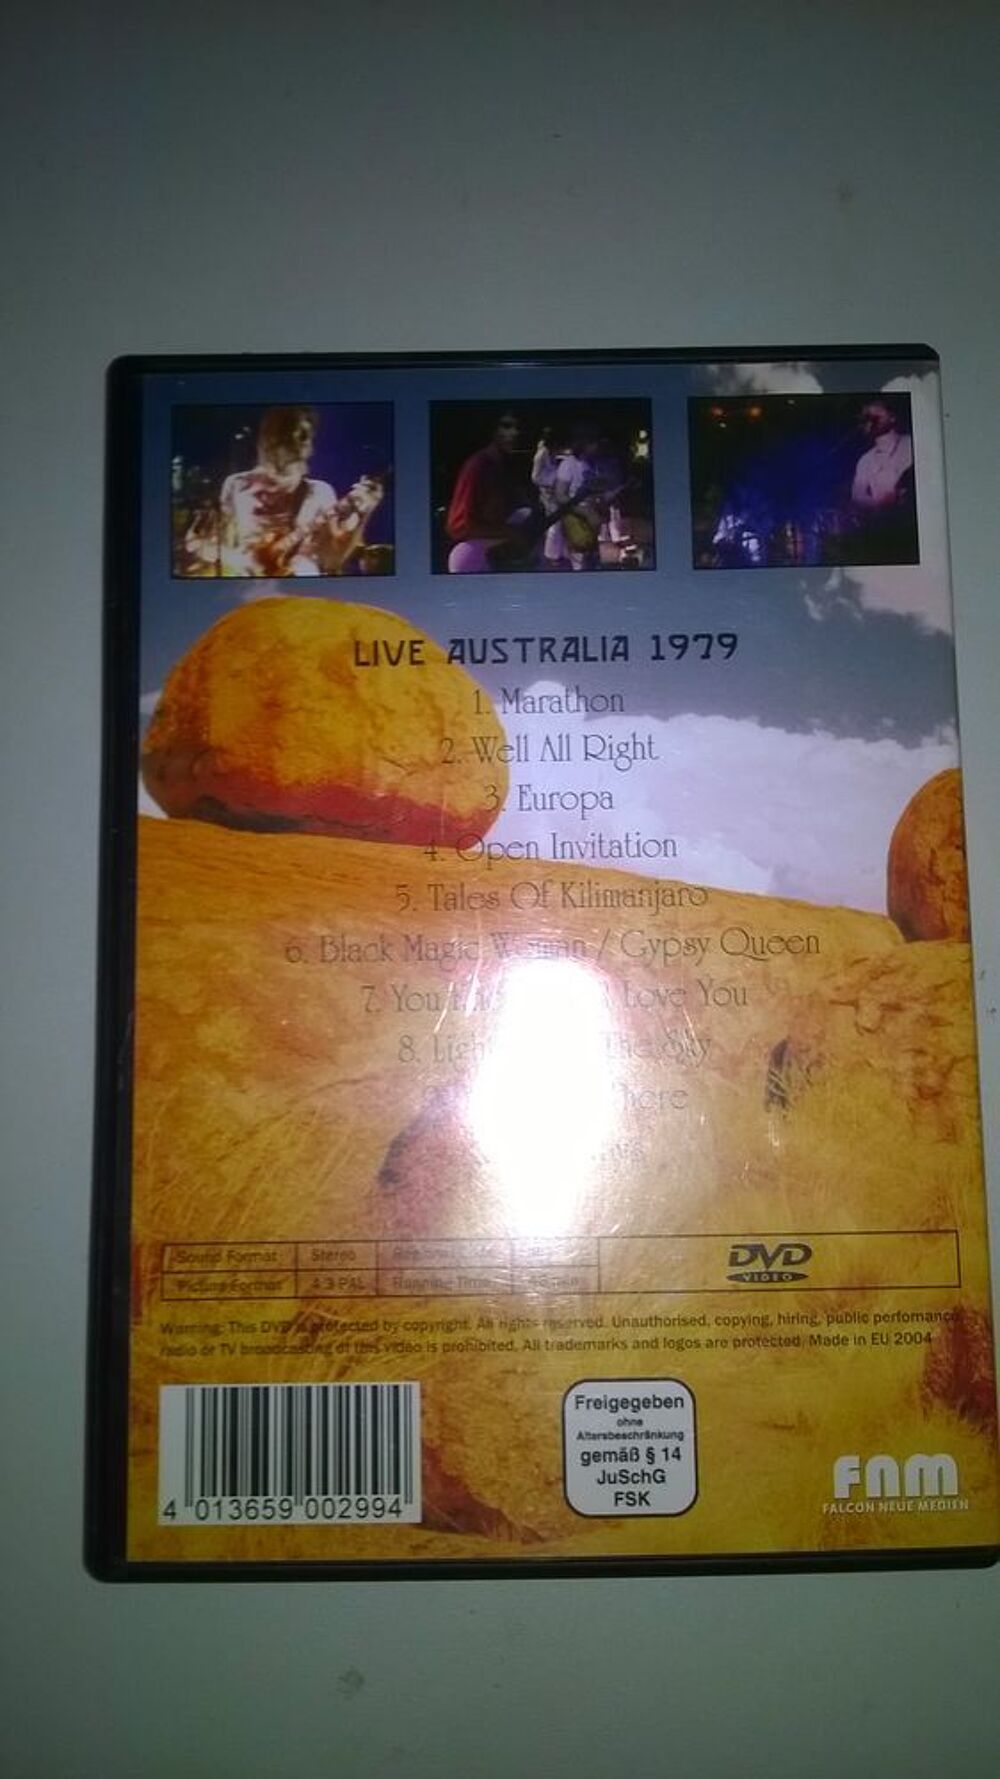 DVD Santana: live in Australia
1979
Excellent etat DVD et blu-ray